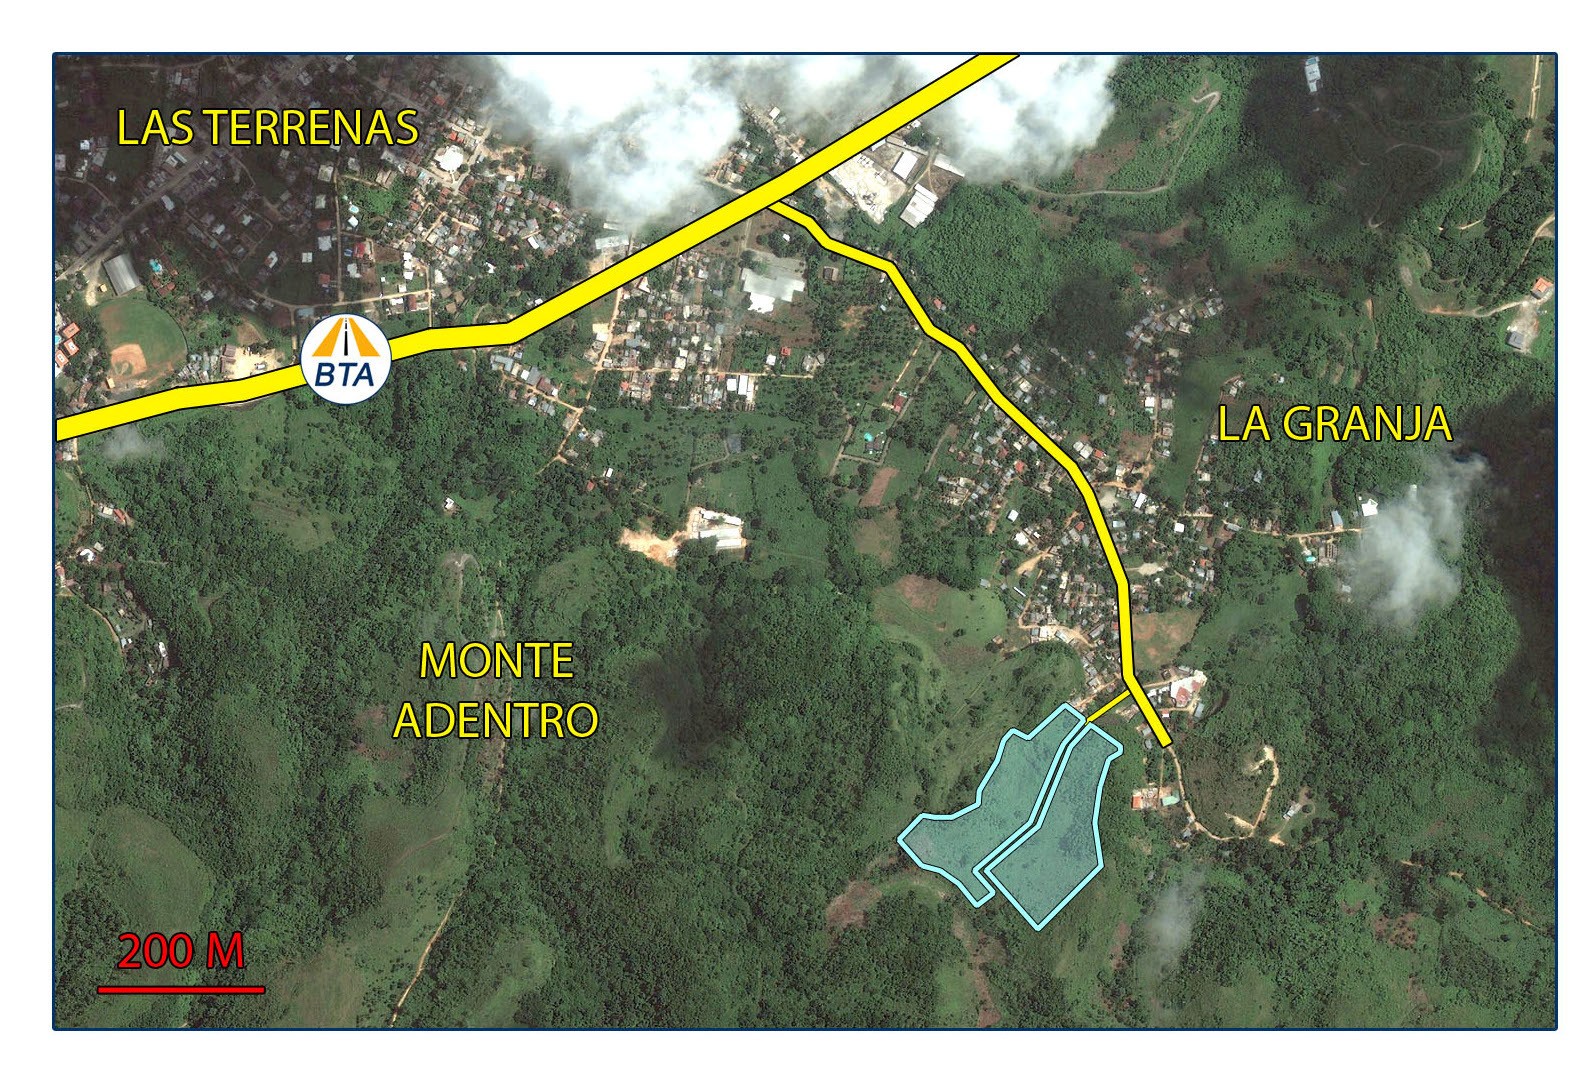 solares y terrenos - Terreno Las Terrenas - Sector La Granja - Muy tranquilo - 80$/m2